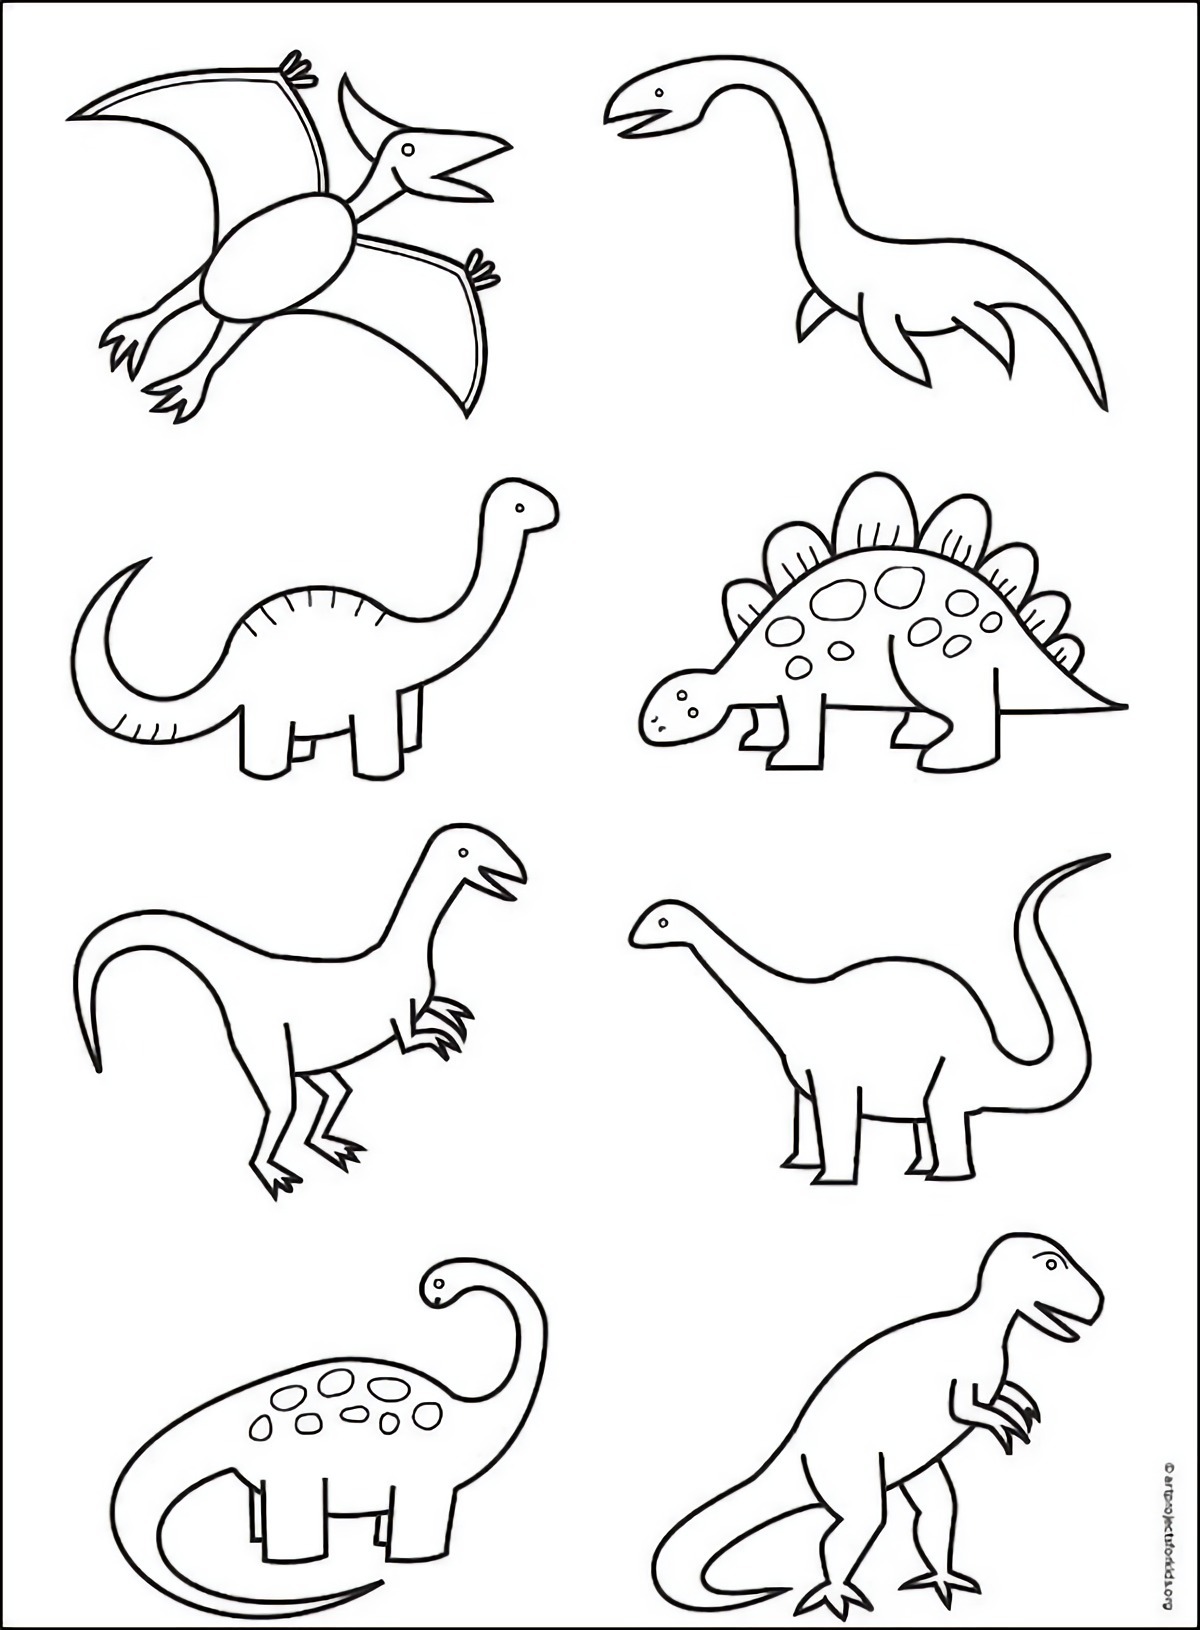 disegni per bambini come colorare un dinosauro